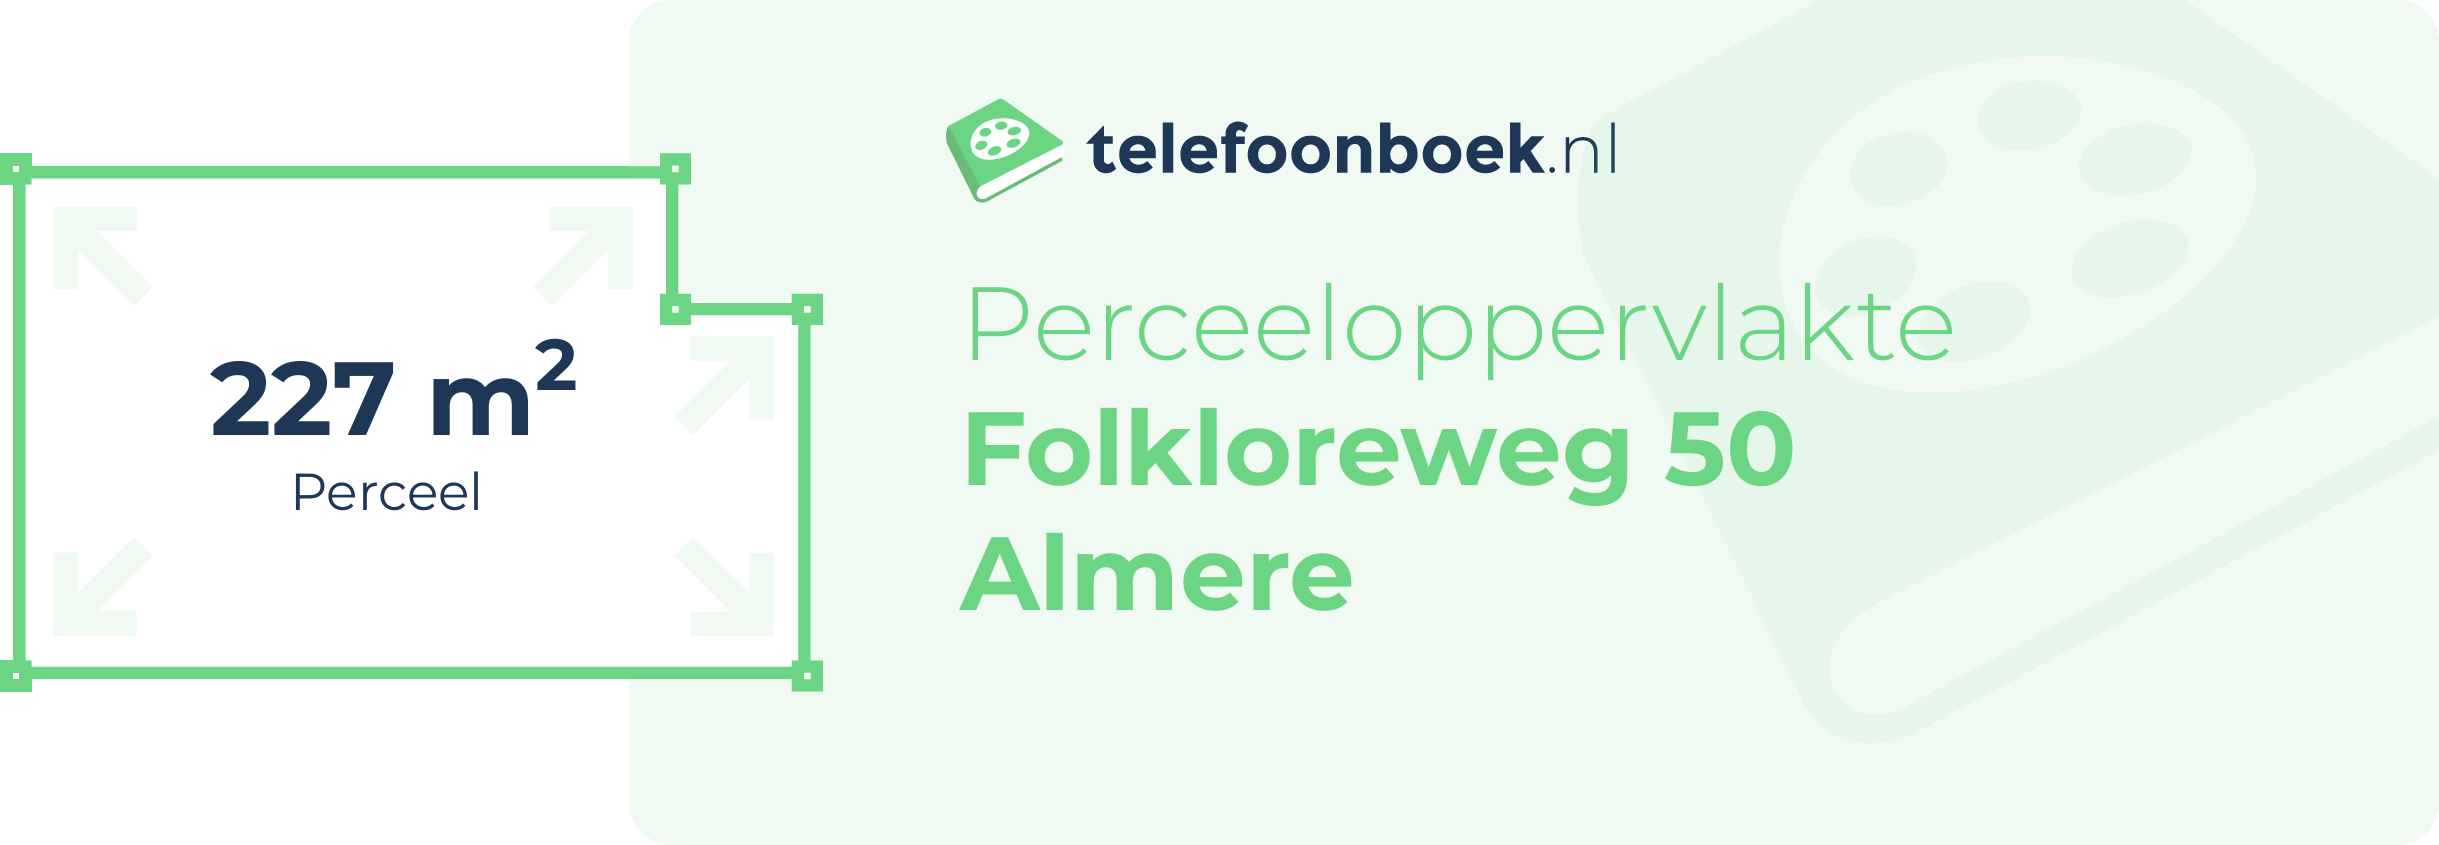 Perceeloppervlakte Folkloreweg 50 Almere